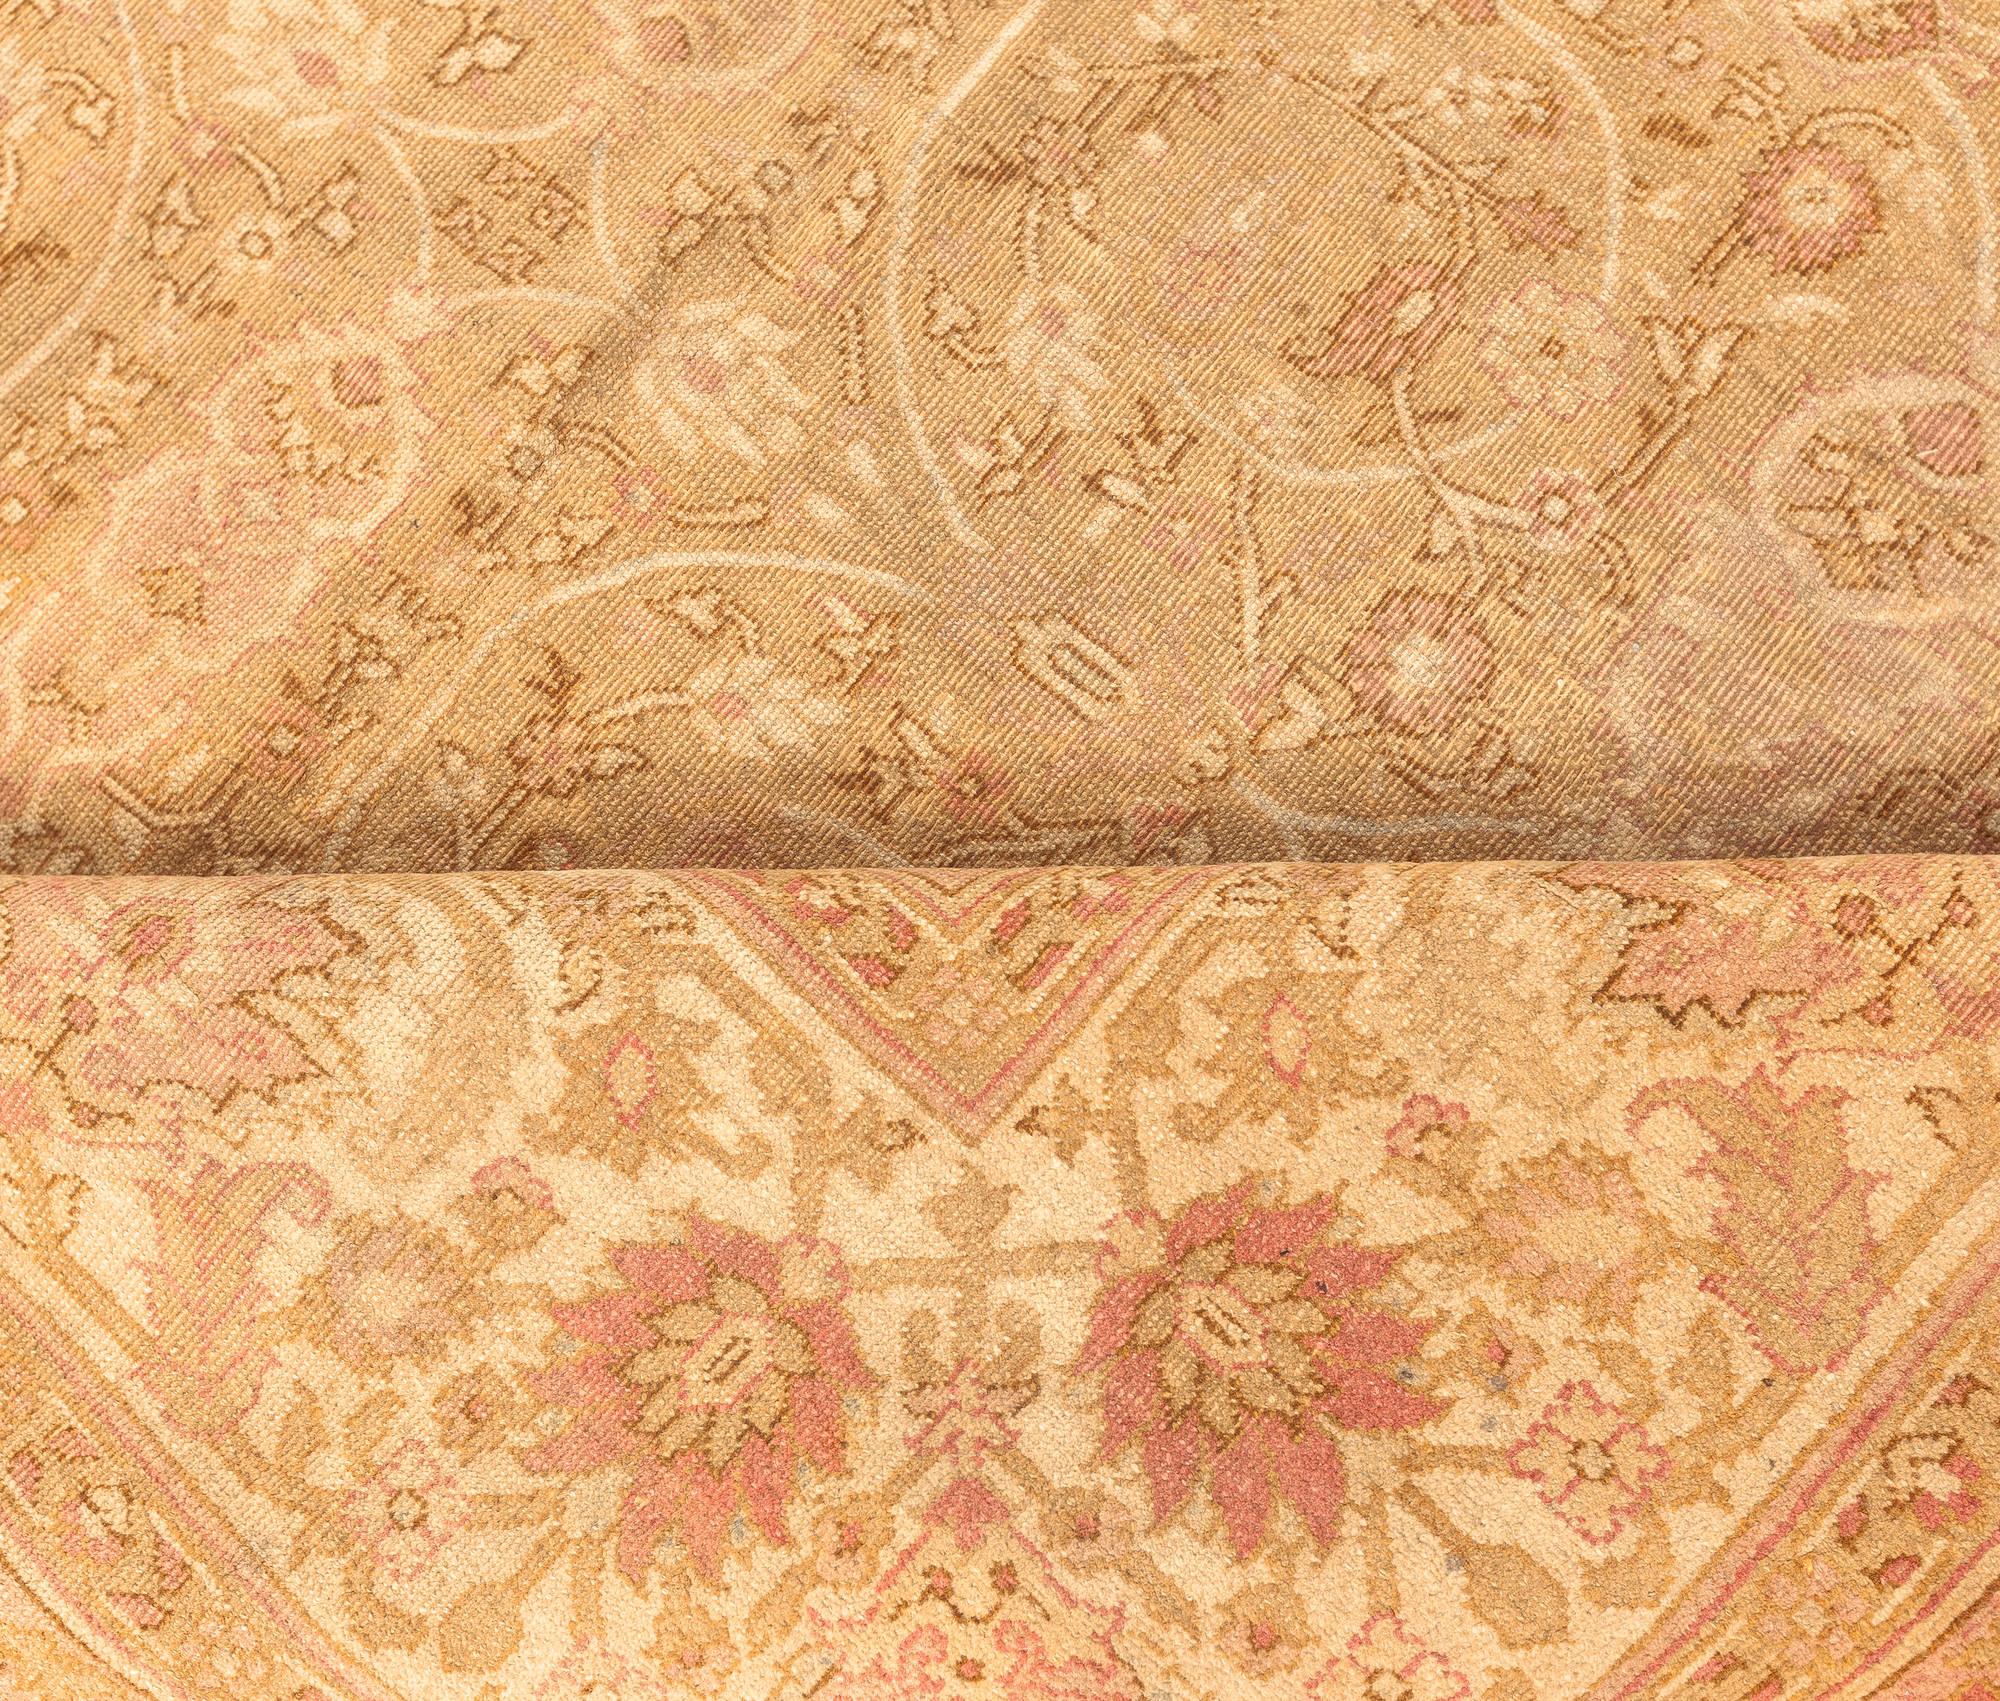 Fine Antique Indian Amritsar botanic carpet (size adjusted)
Size: 10'8